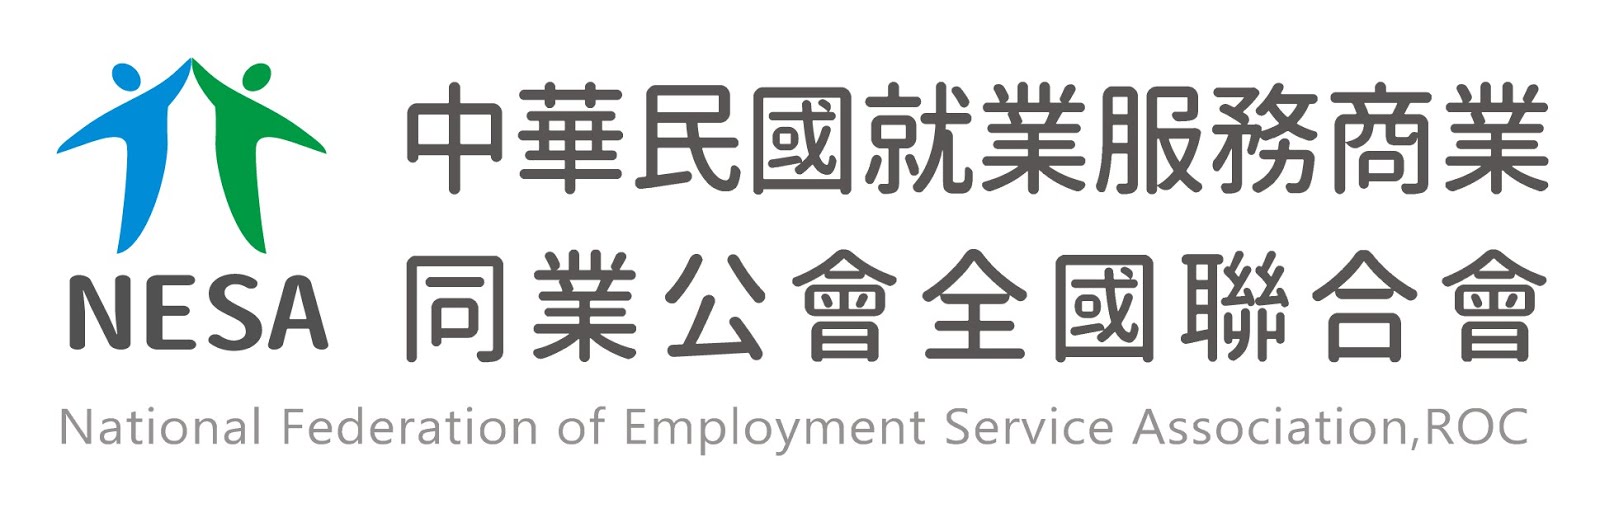 中華民國就業服務商業同業公會全國聯合會